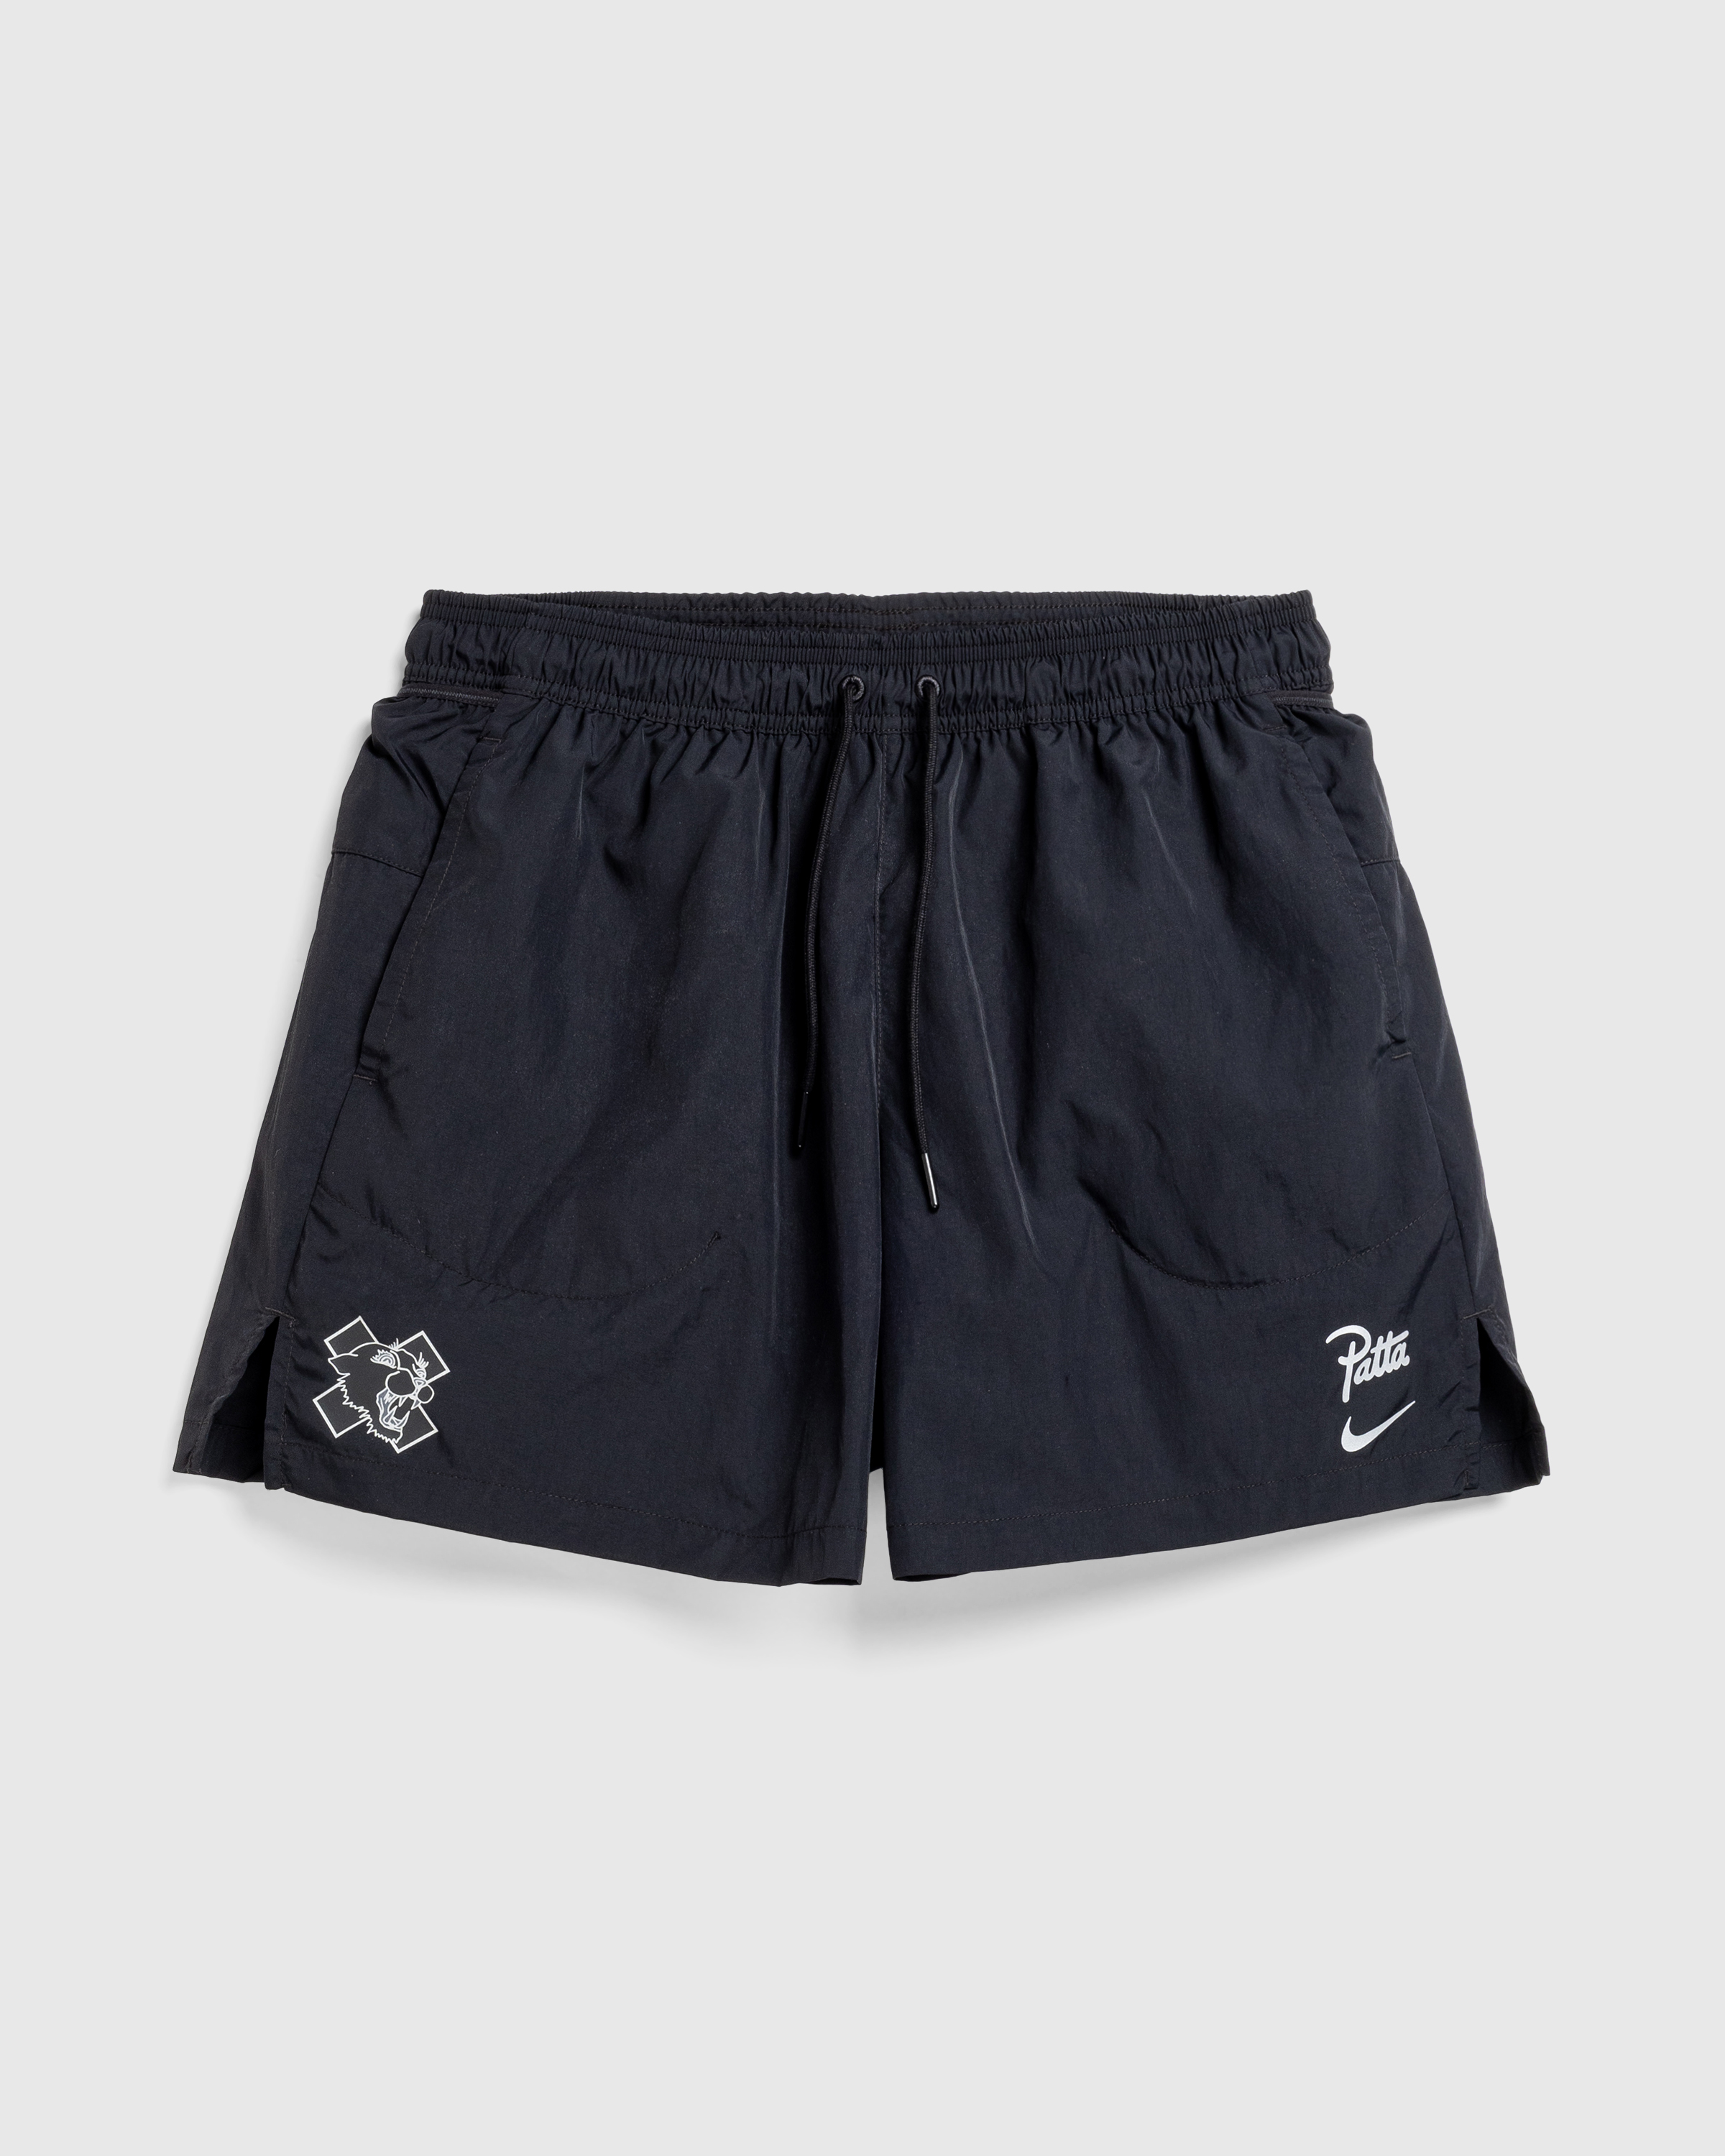 Nike x Patta – Men's Shorts Black - Active Shorts - Black - Image 1